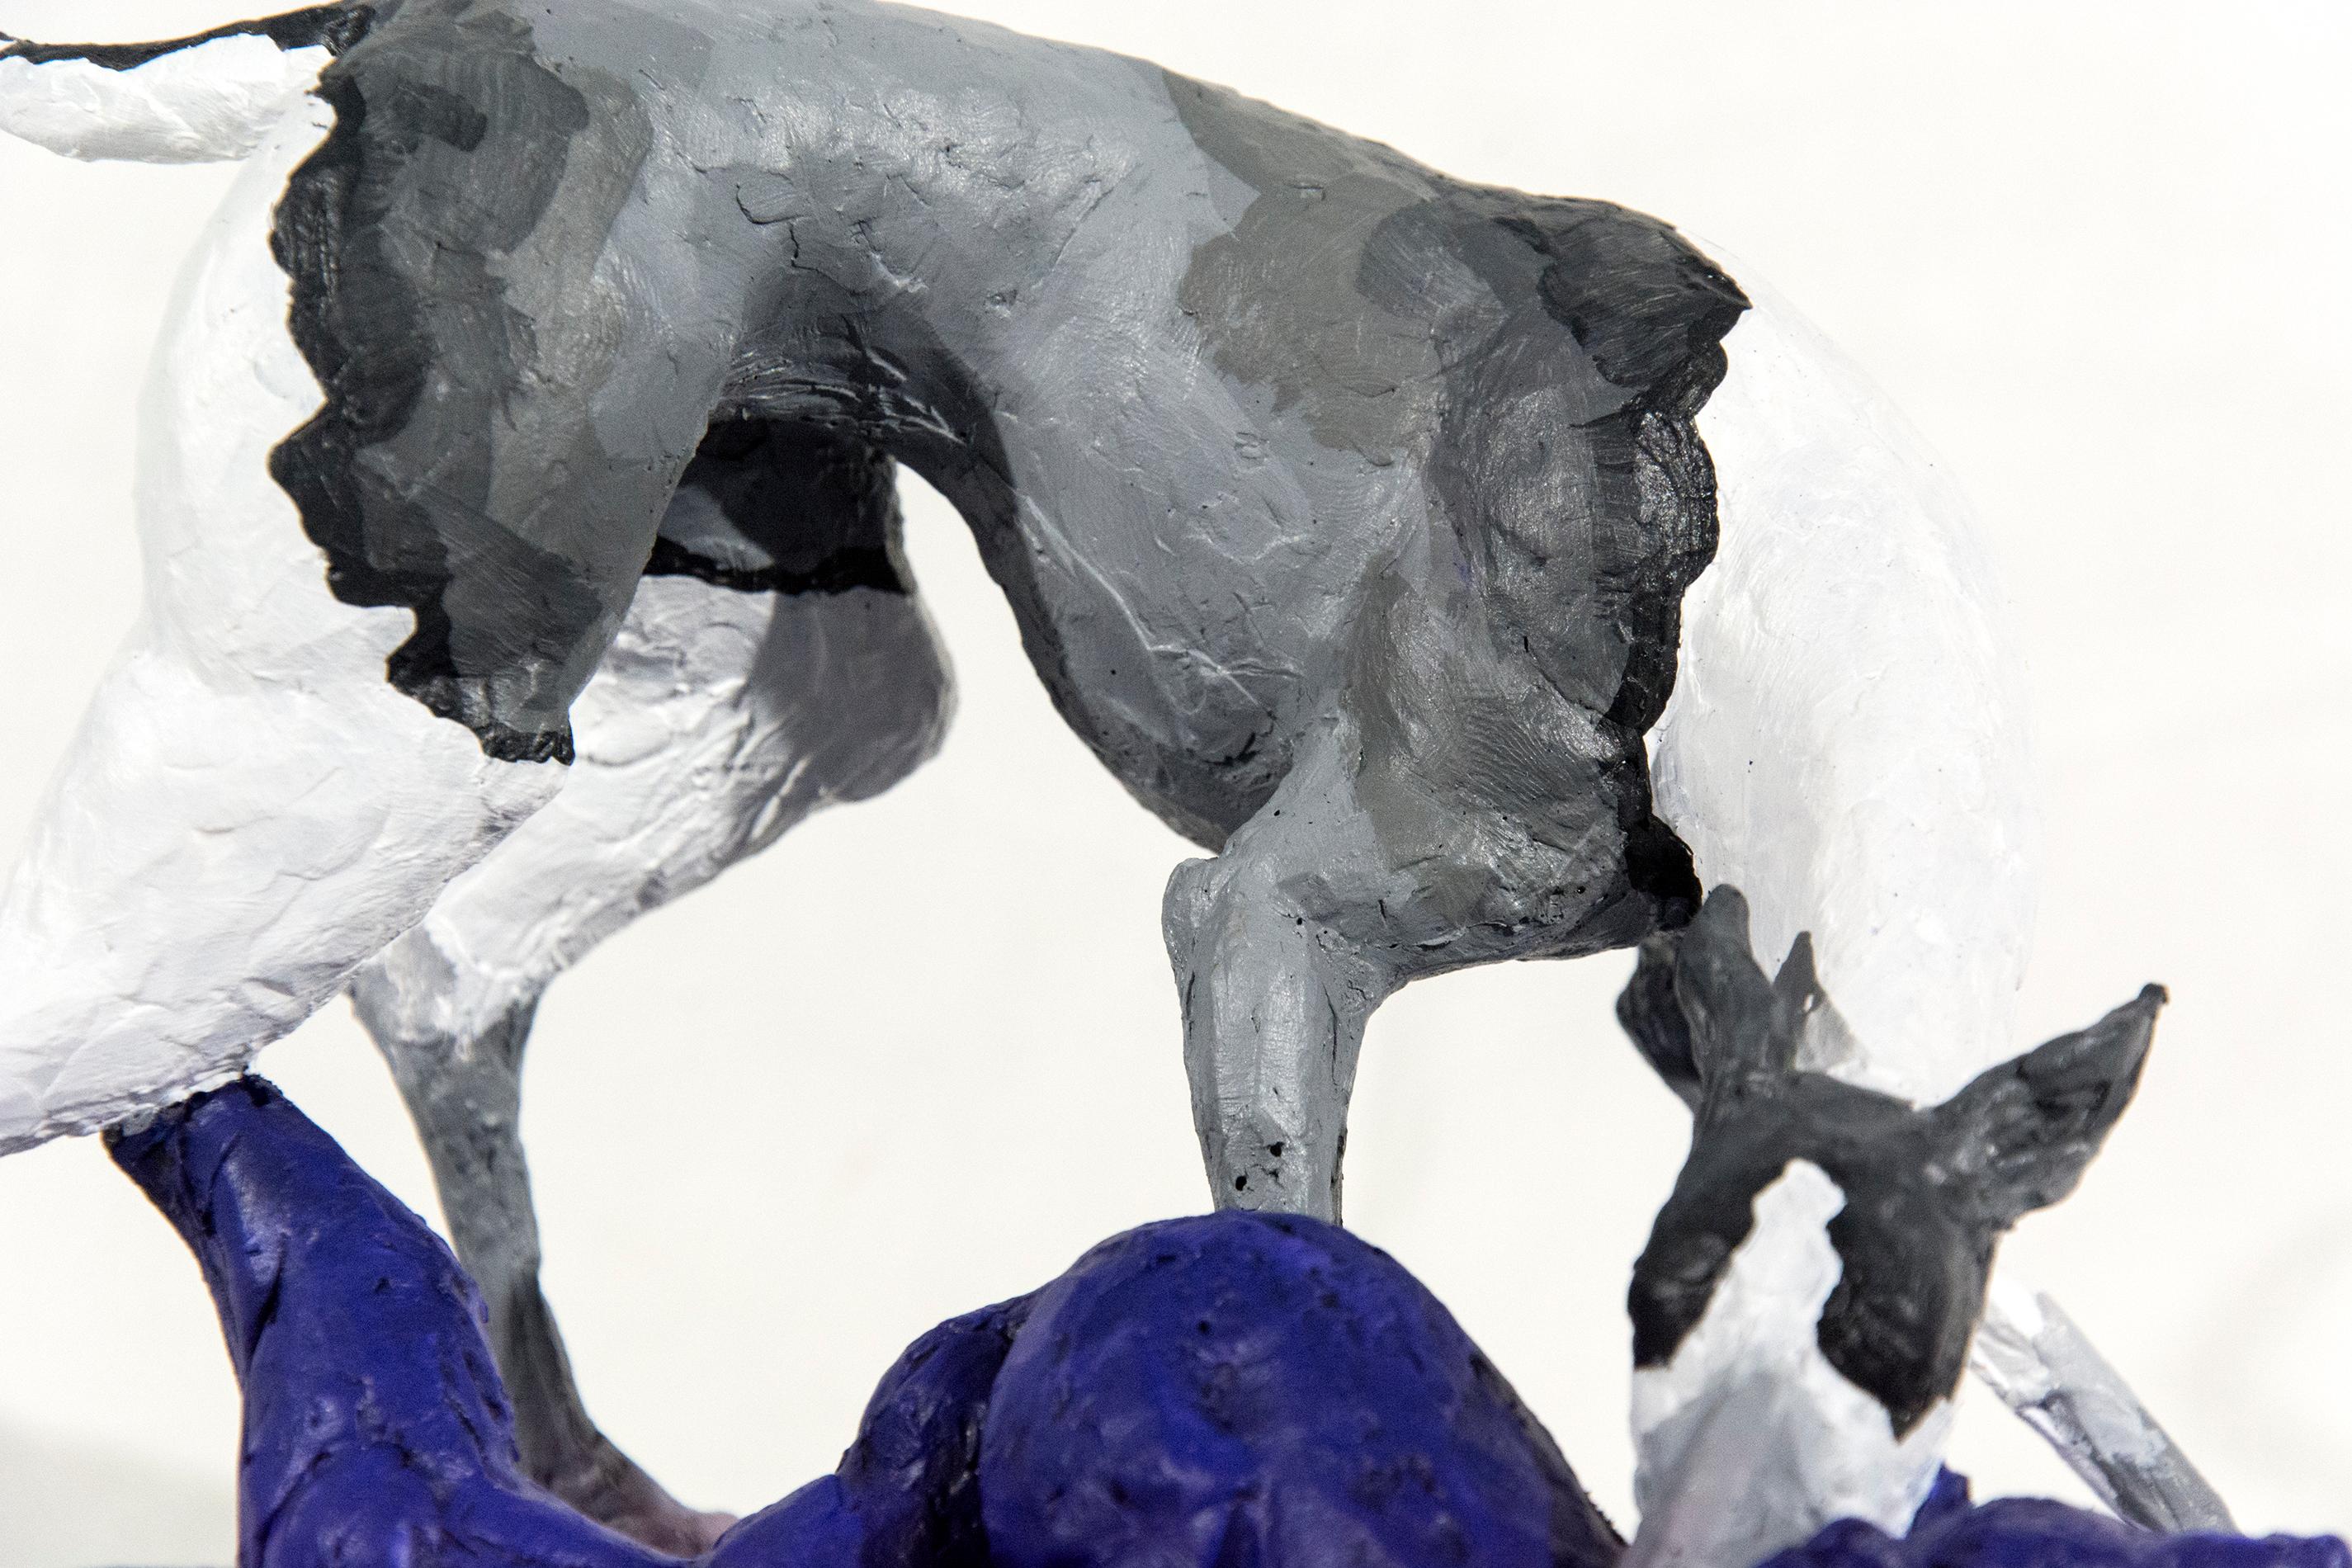 Hound 2/8 - klein, grau, weiß, blau, figurativ, Hund, Wildtiere, Harzskulptur (Grau), Figurative Sculpture, von Nicholas Crombach